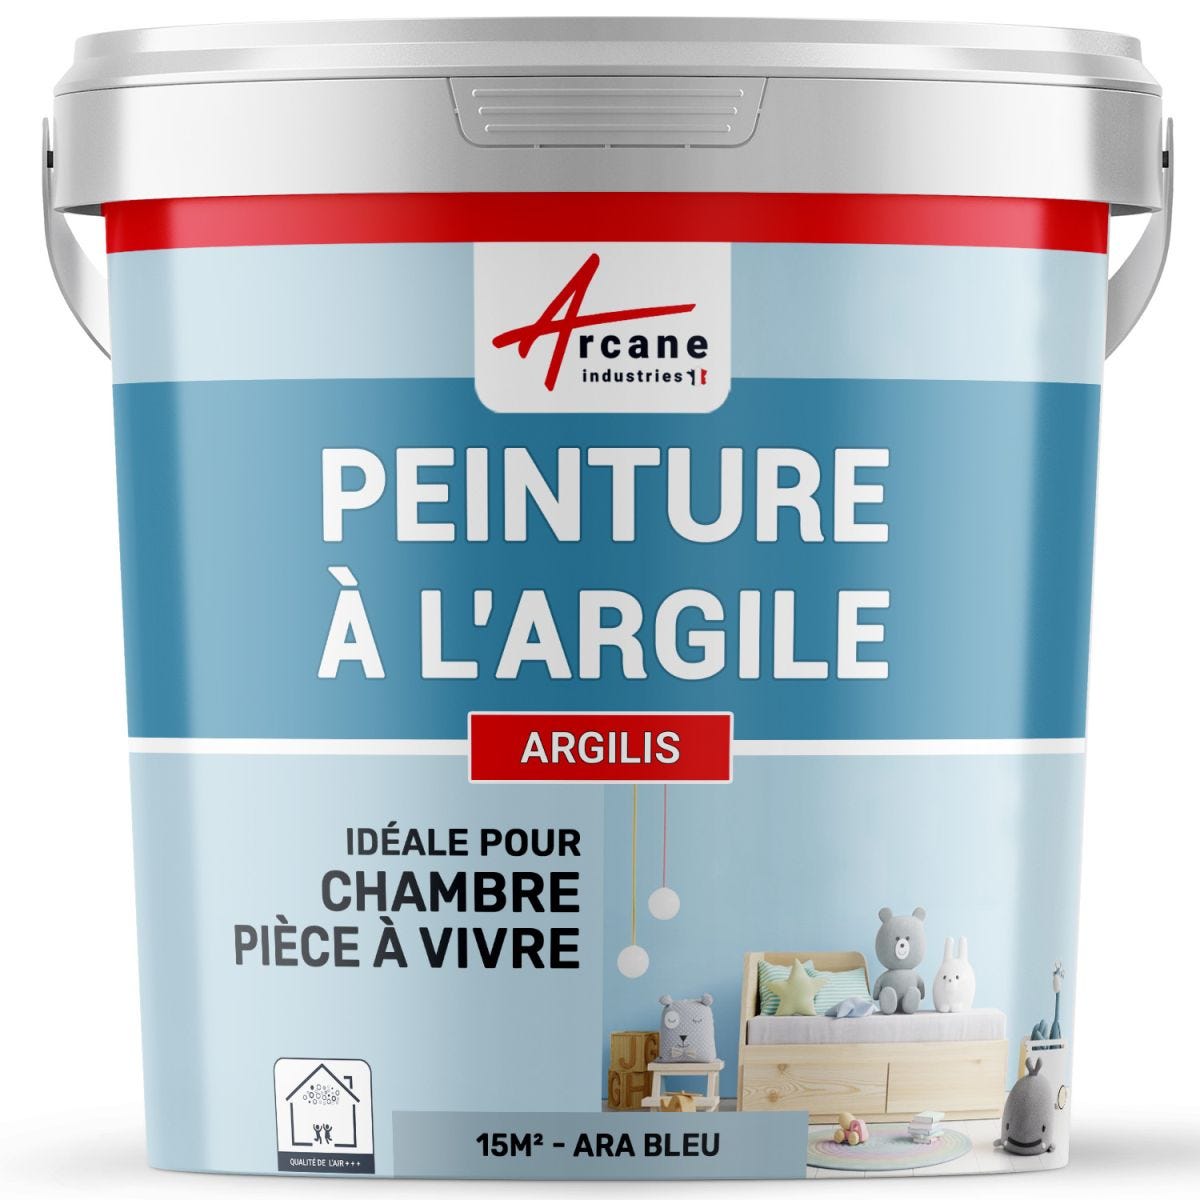 PEINTURE ARGILE naturelle et saine - ARGILIS Ara Bleu - 15 m² (2.5 kg en 1 couche)ARCANE INDUSTRIES 0